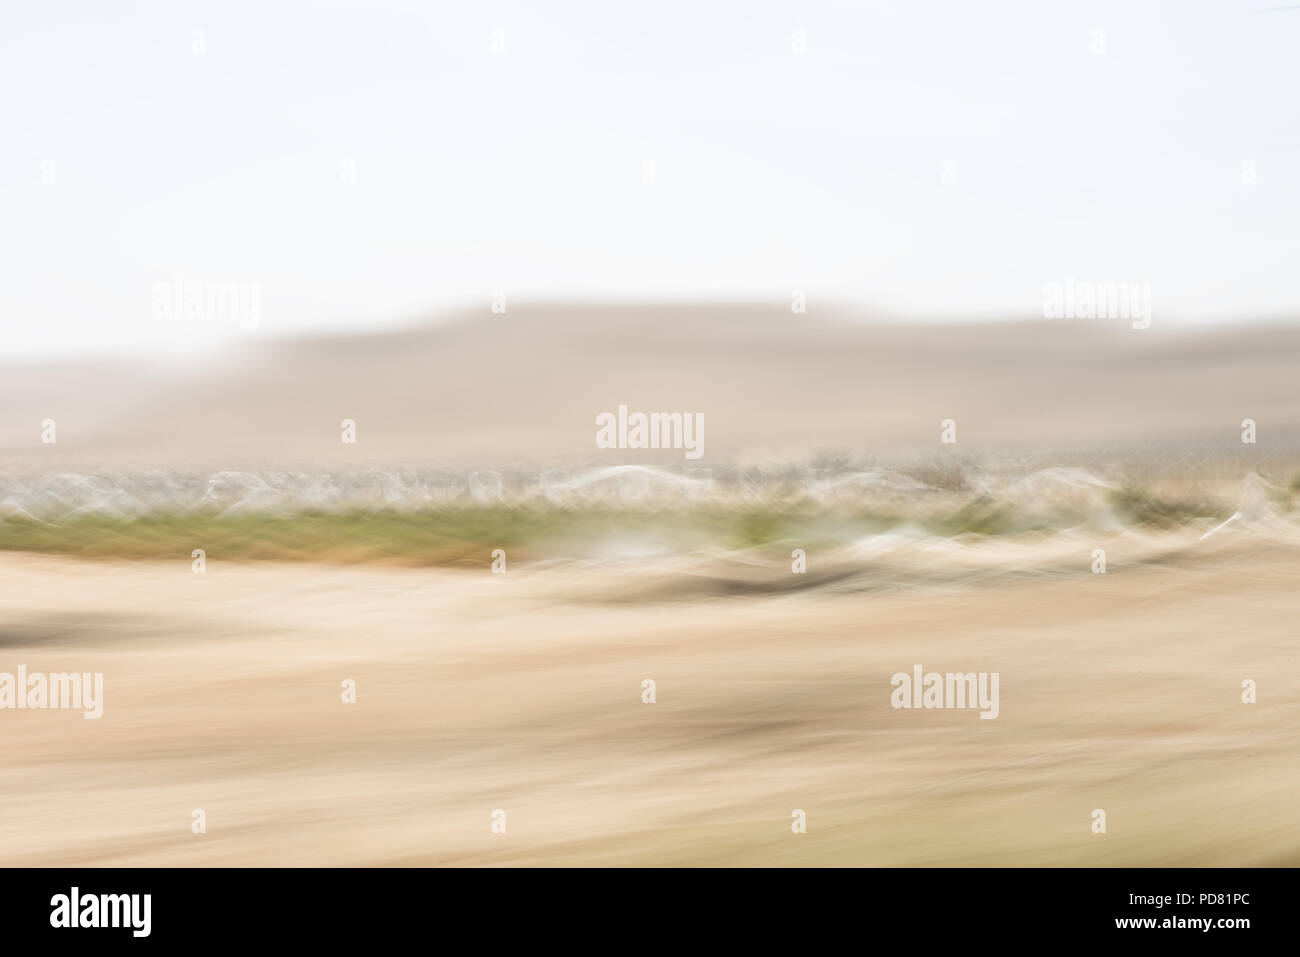 Impression abstraite du désert du Néguev de Cisjordanie Palestine floue montrant les dunes mobiles, vent et peu de végétation. Une impression d'un movi Banque D'Images